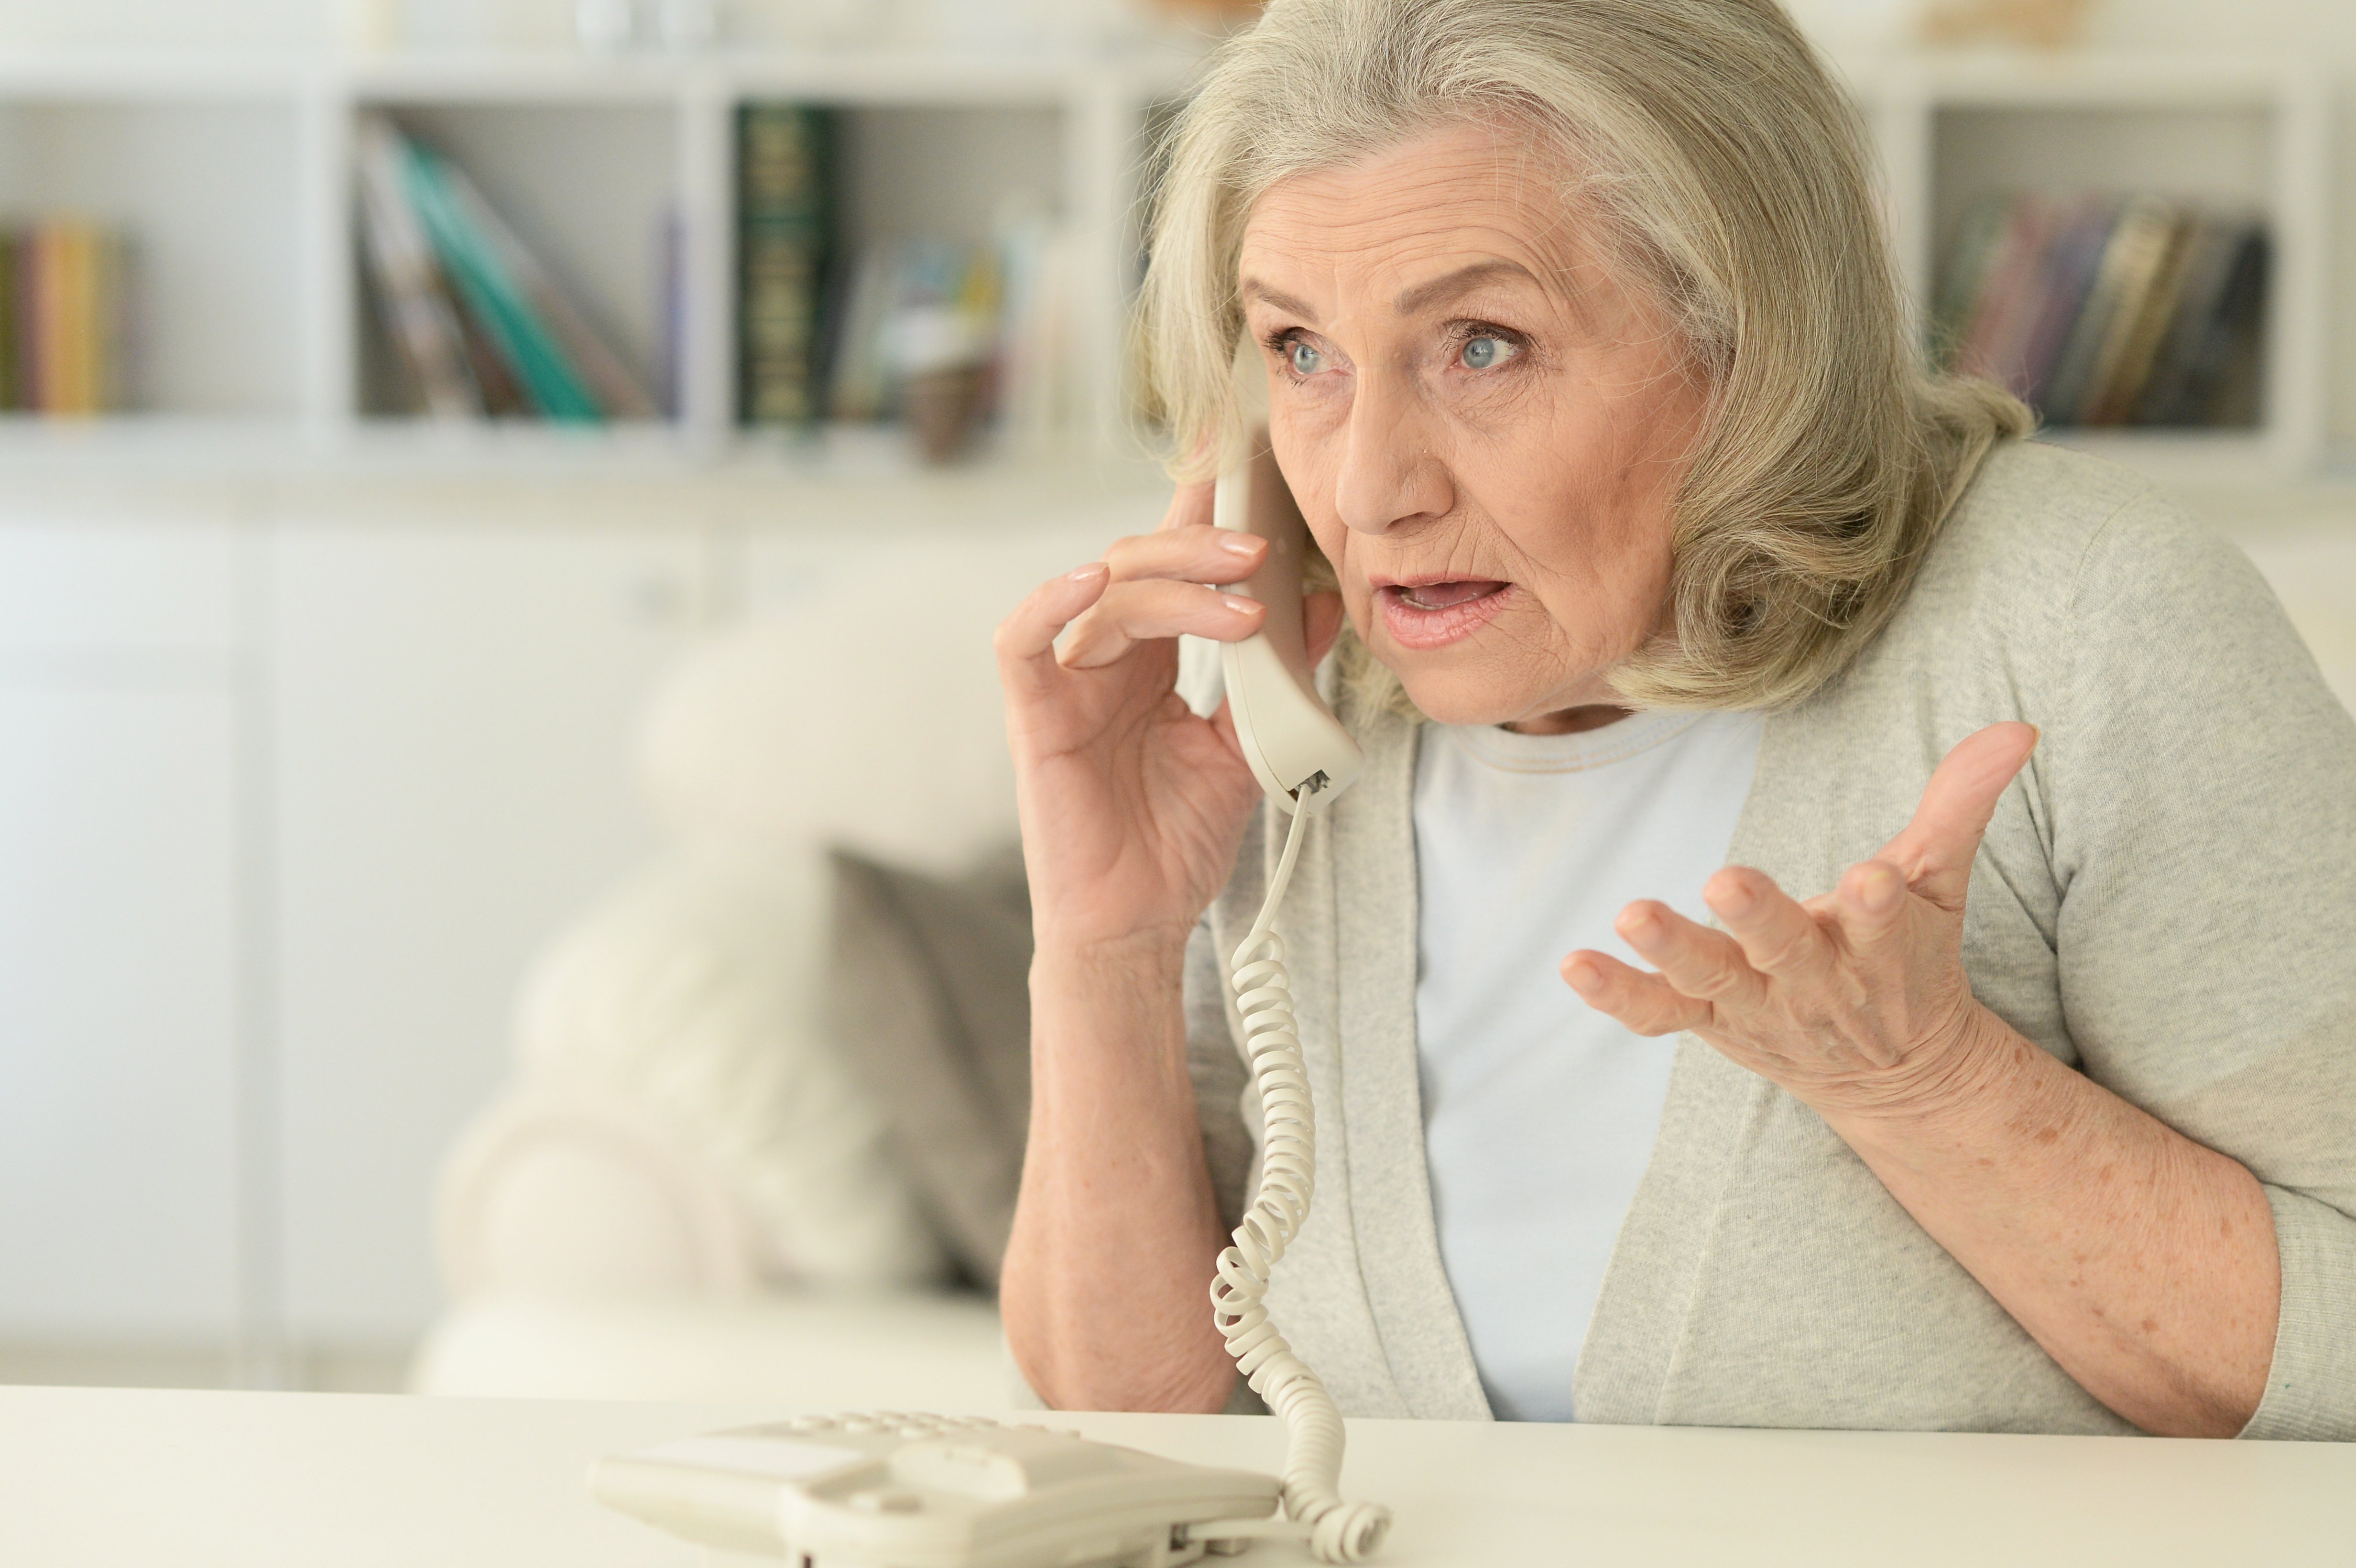 Una mujer mayor atiende una llamada que le angustia. | Foto: Shutterstock